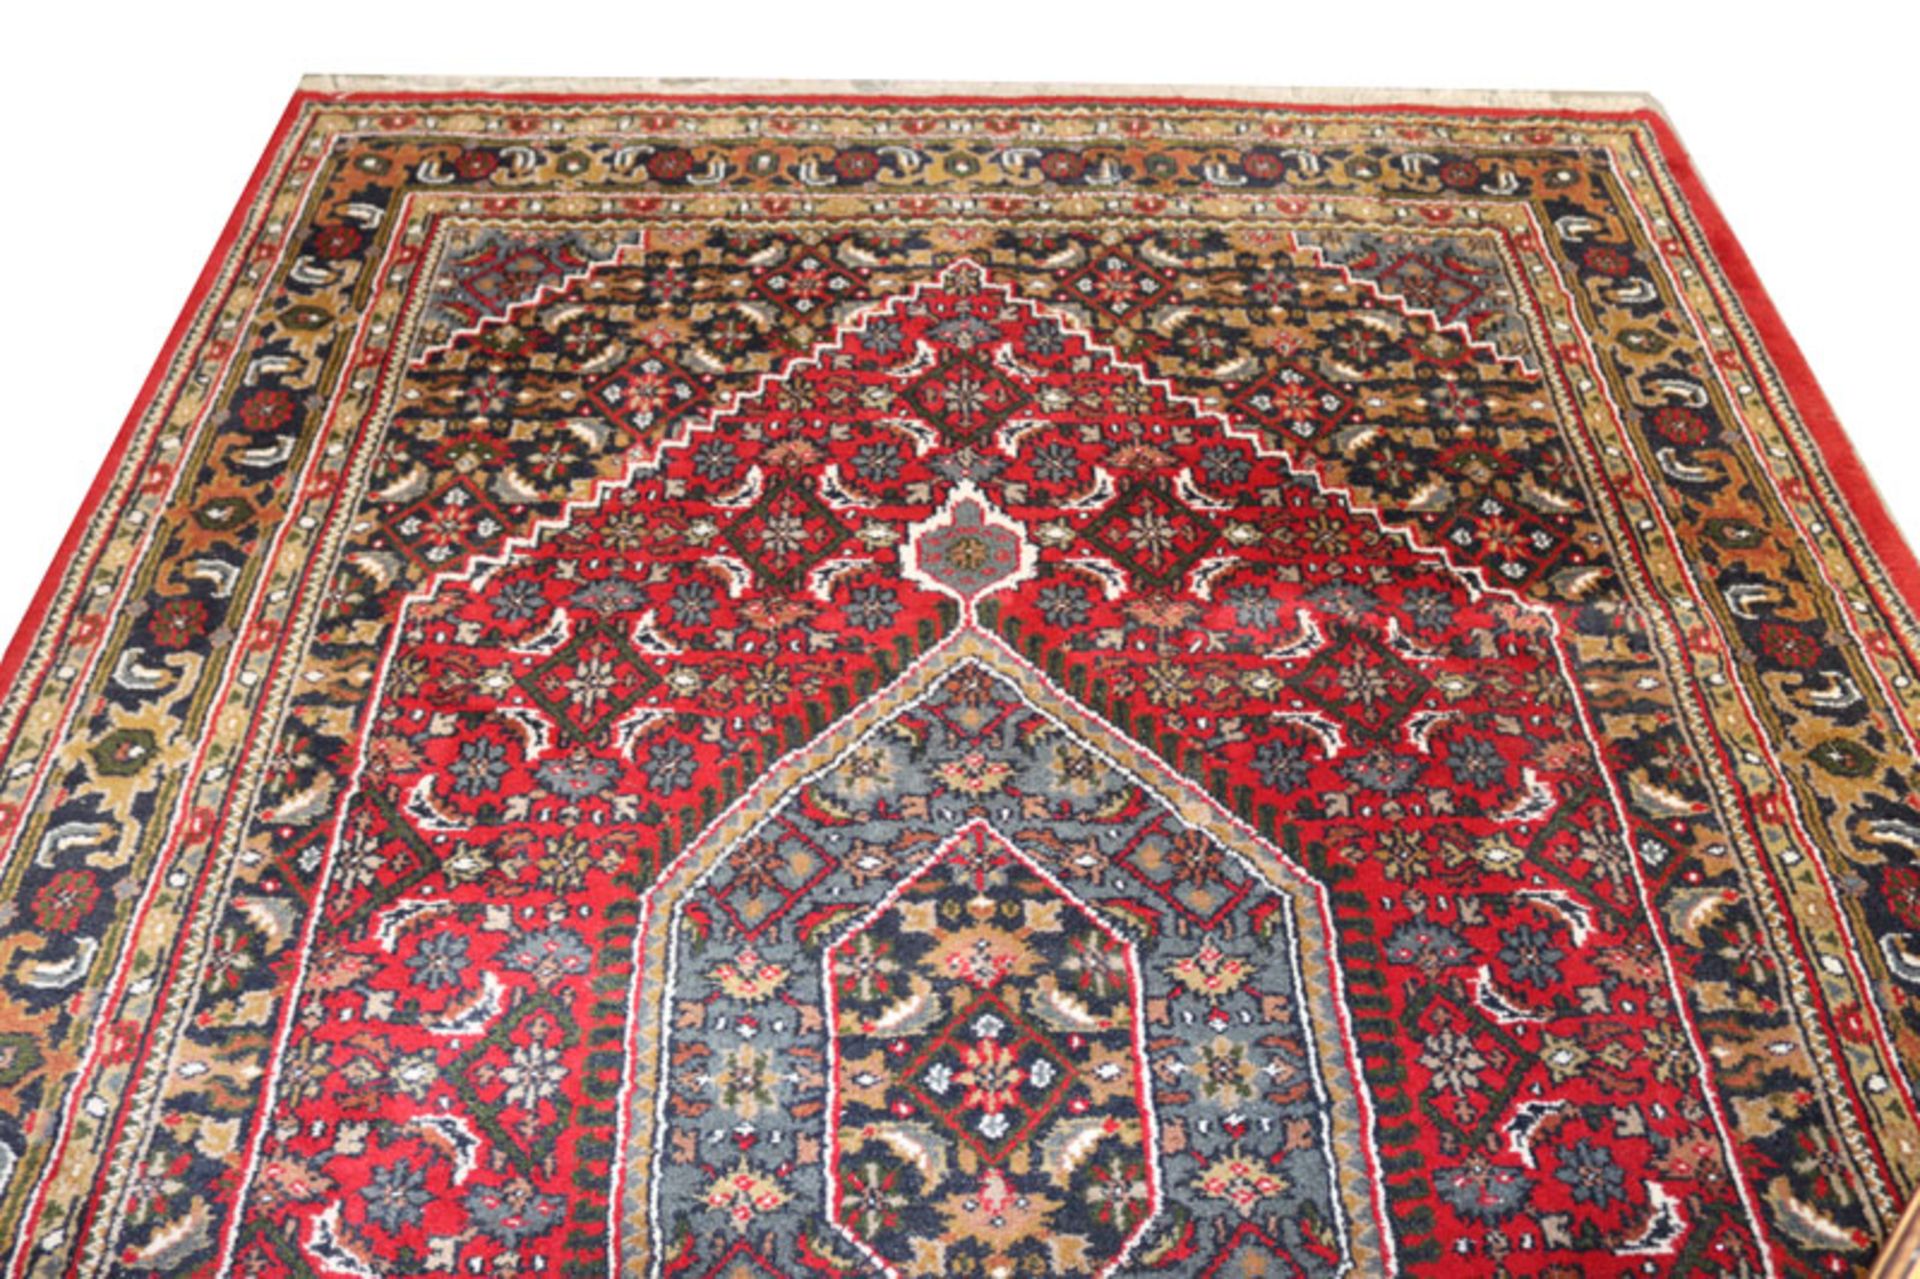 Teppich, Meshed, rot/bunt, Gebrauchsspuren, 293 cm x 197 cm, Abholung oder Versand per Spedition